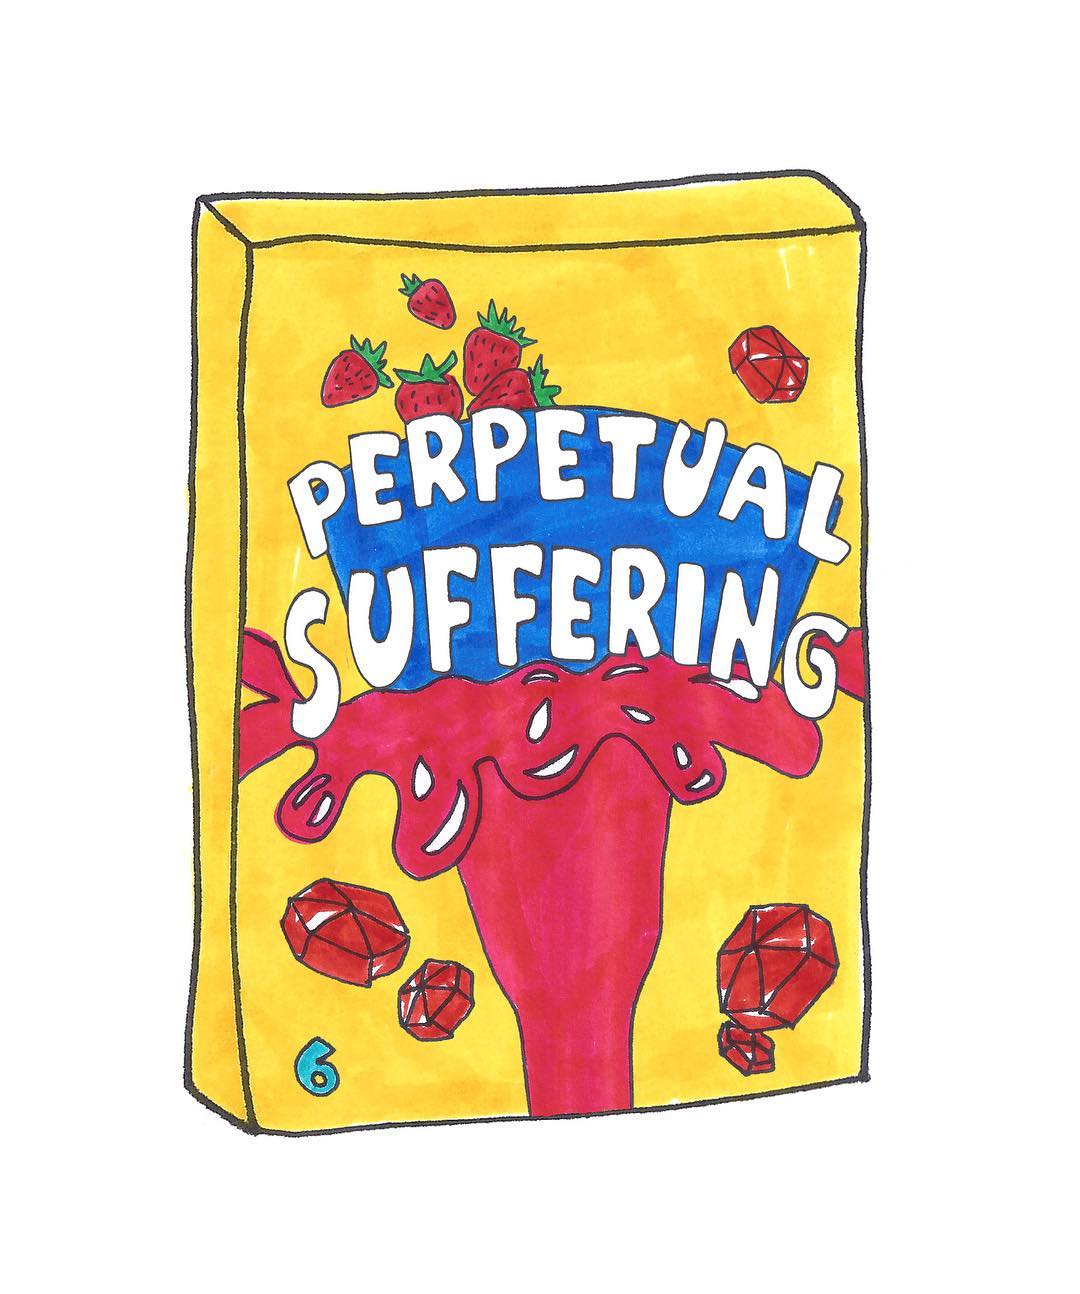 Perpetual Suffering by Grace Miceli